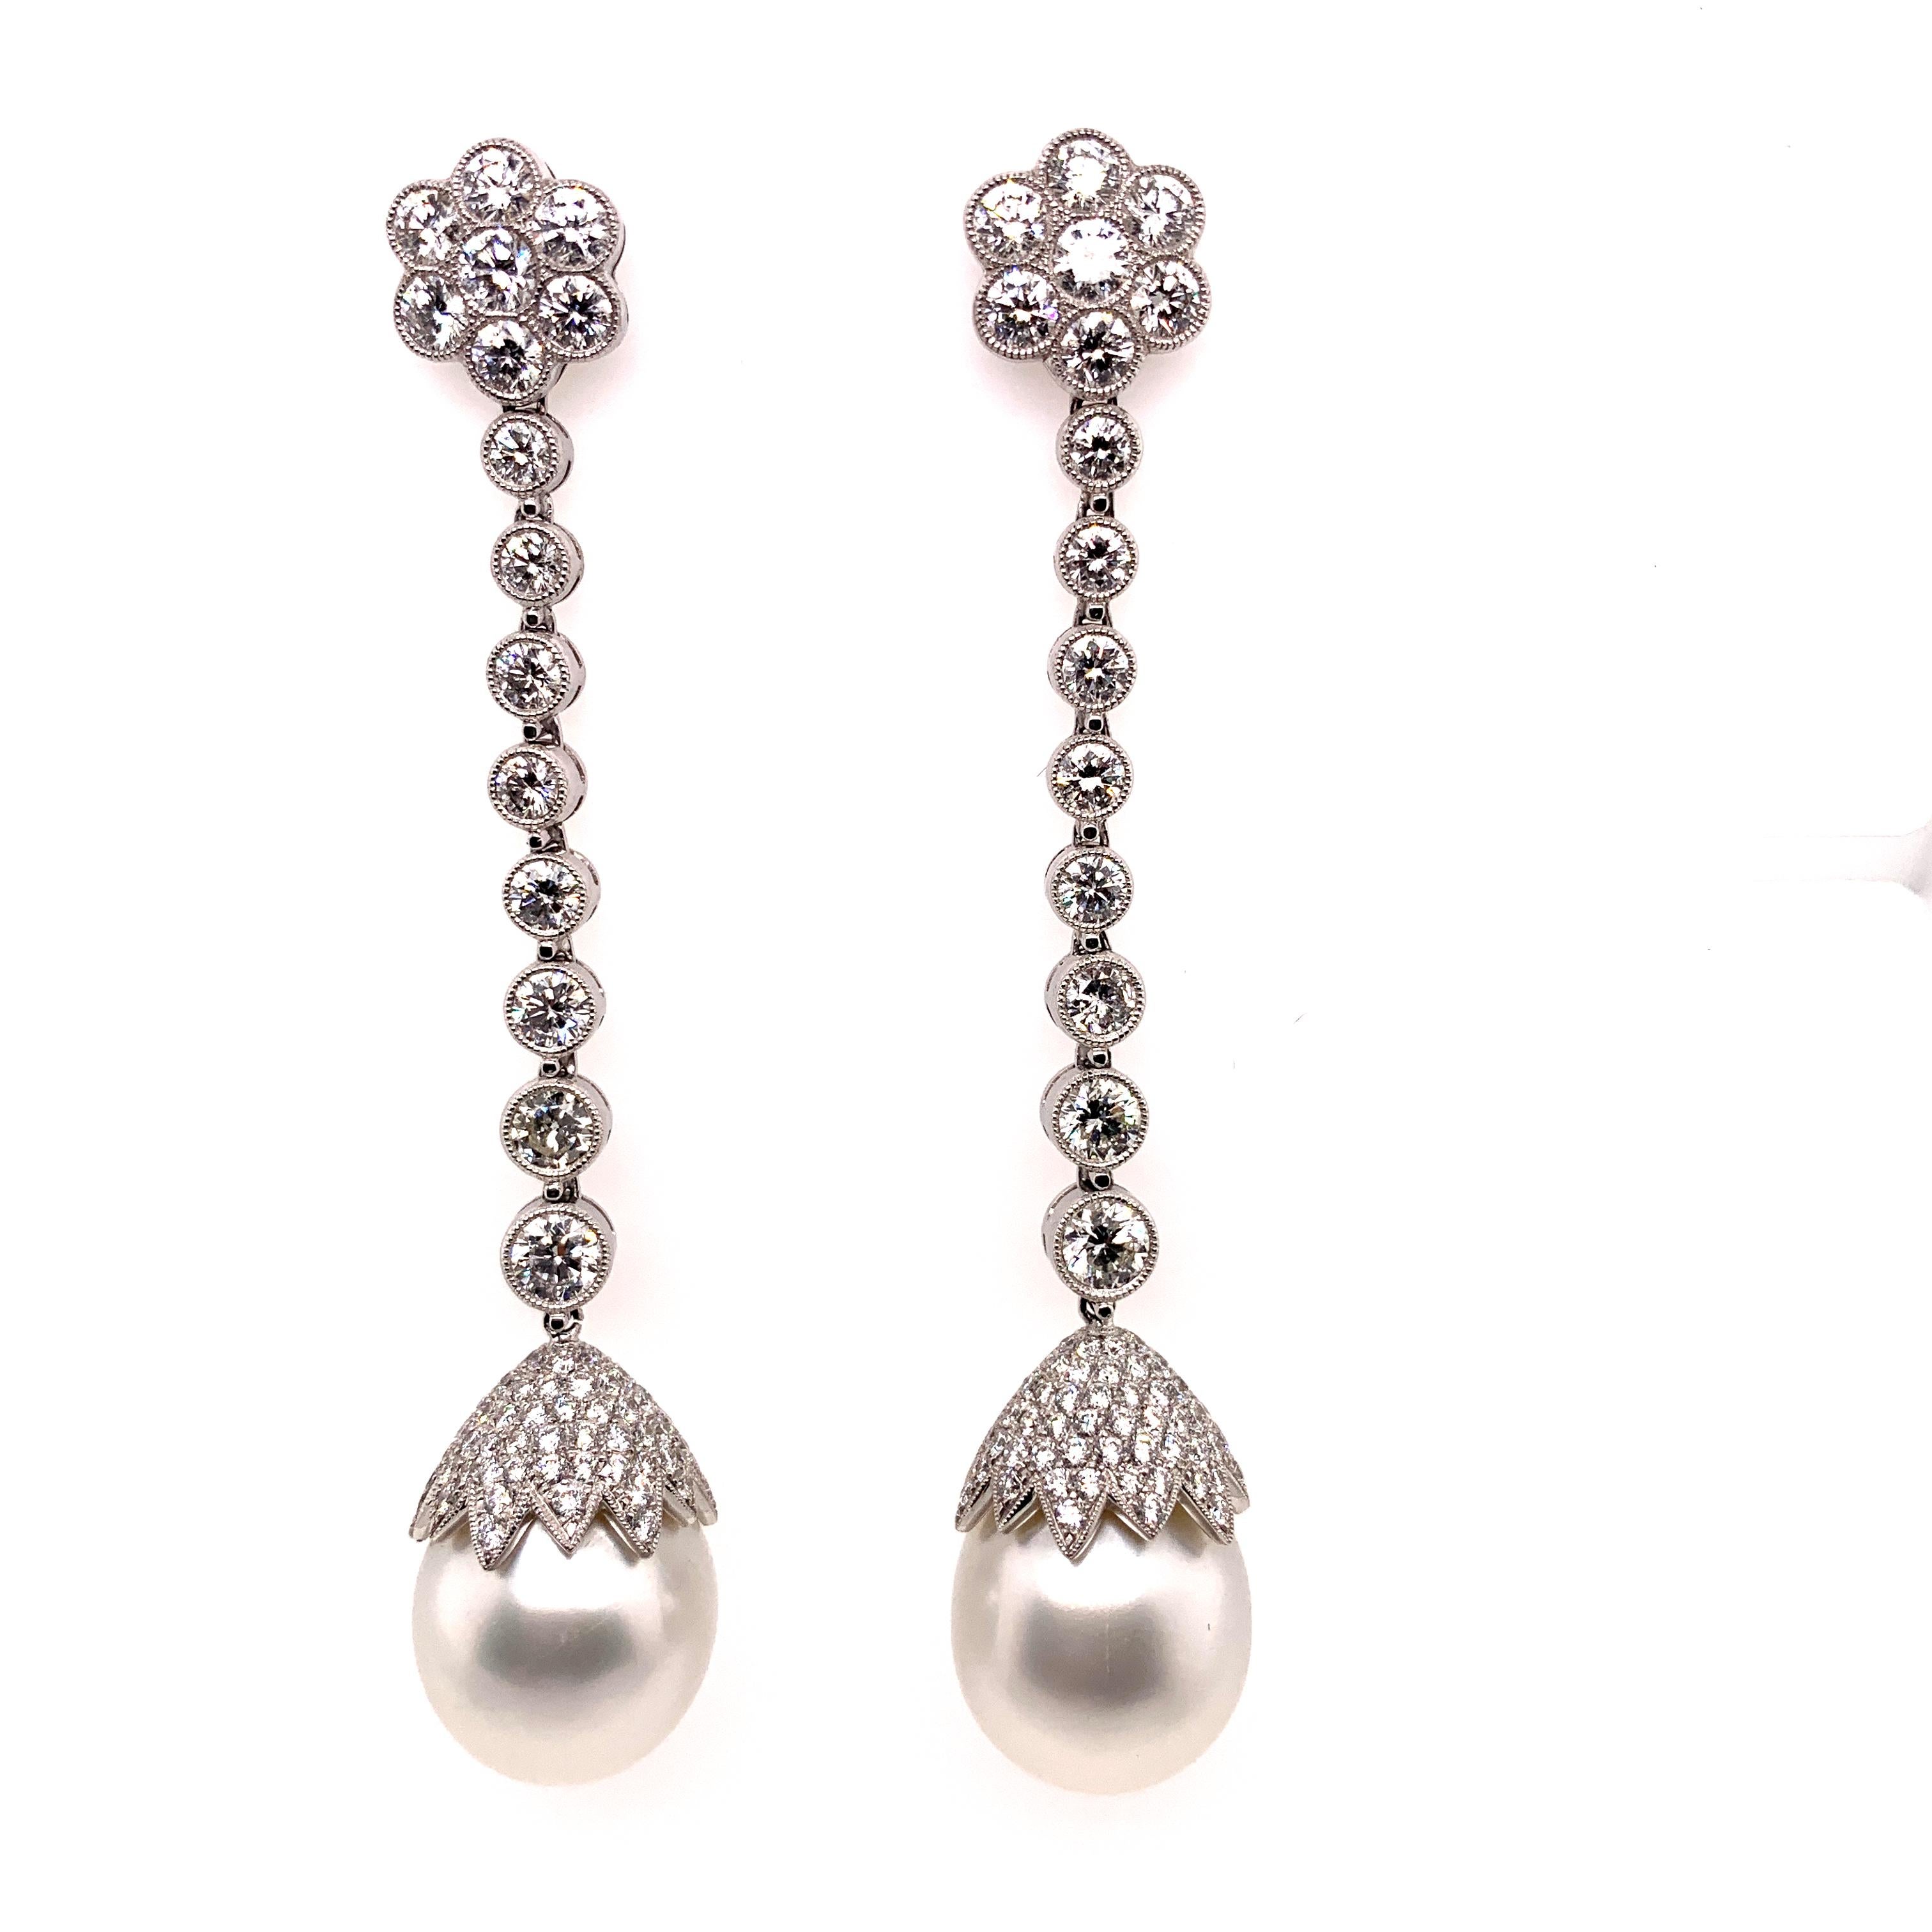 Tropfenohrringe aus Platin mit 4,27 Karat Diamanten und weißen Perlen.

Sophia D von Joseph Dardashti LTD ist seit 35 Jahren weltweit bekannt und lässt sich vom klassischen Art-Déco-Design inspirieren, das mit modernen Fertigungstechniken